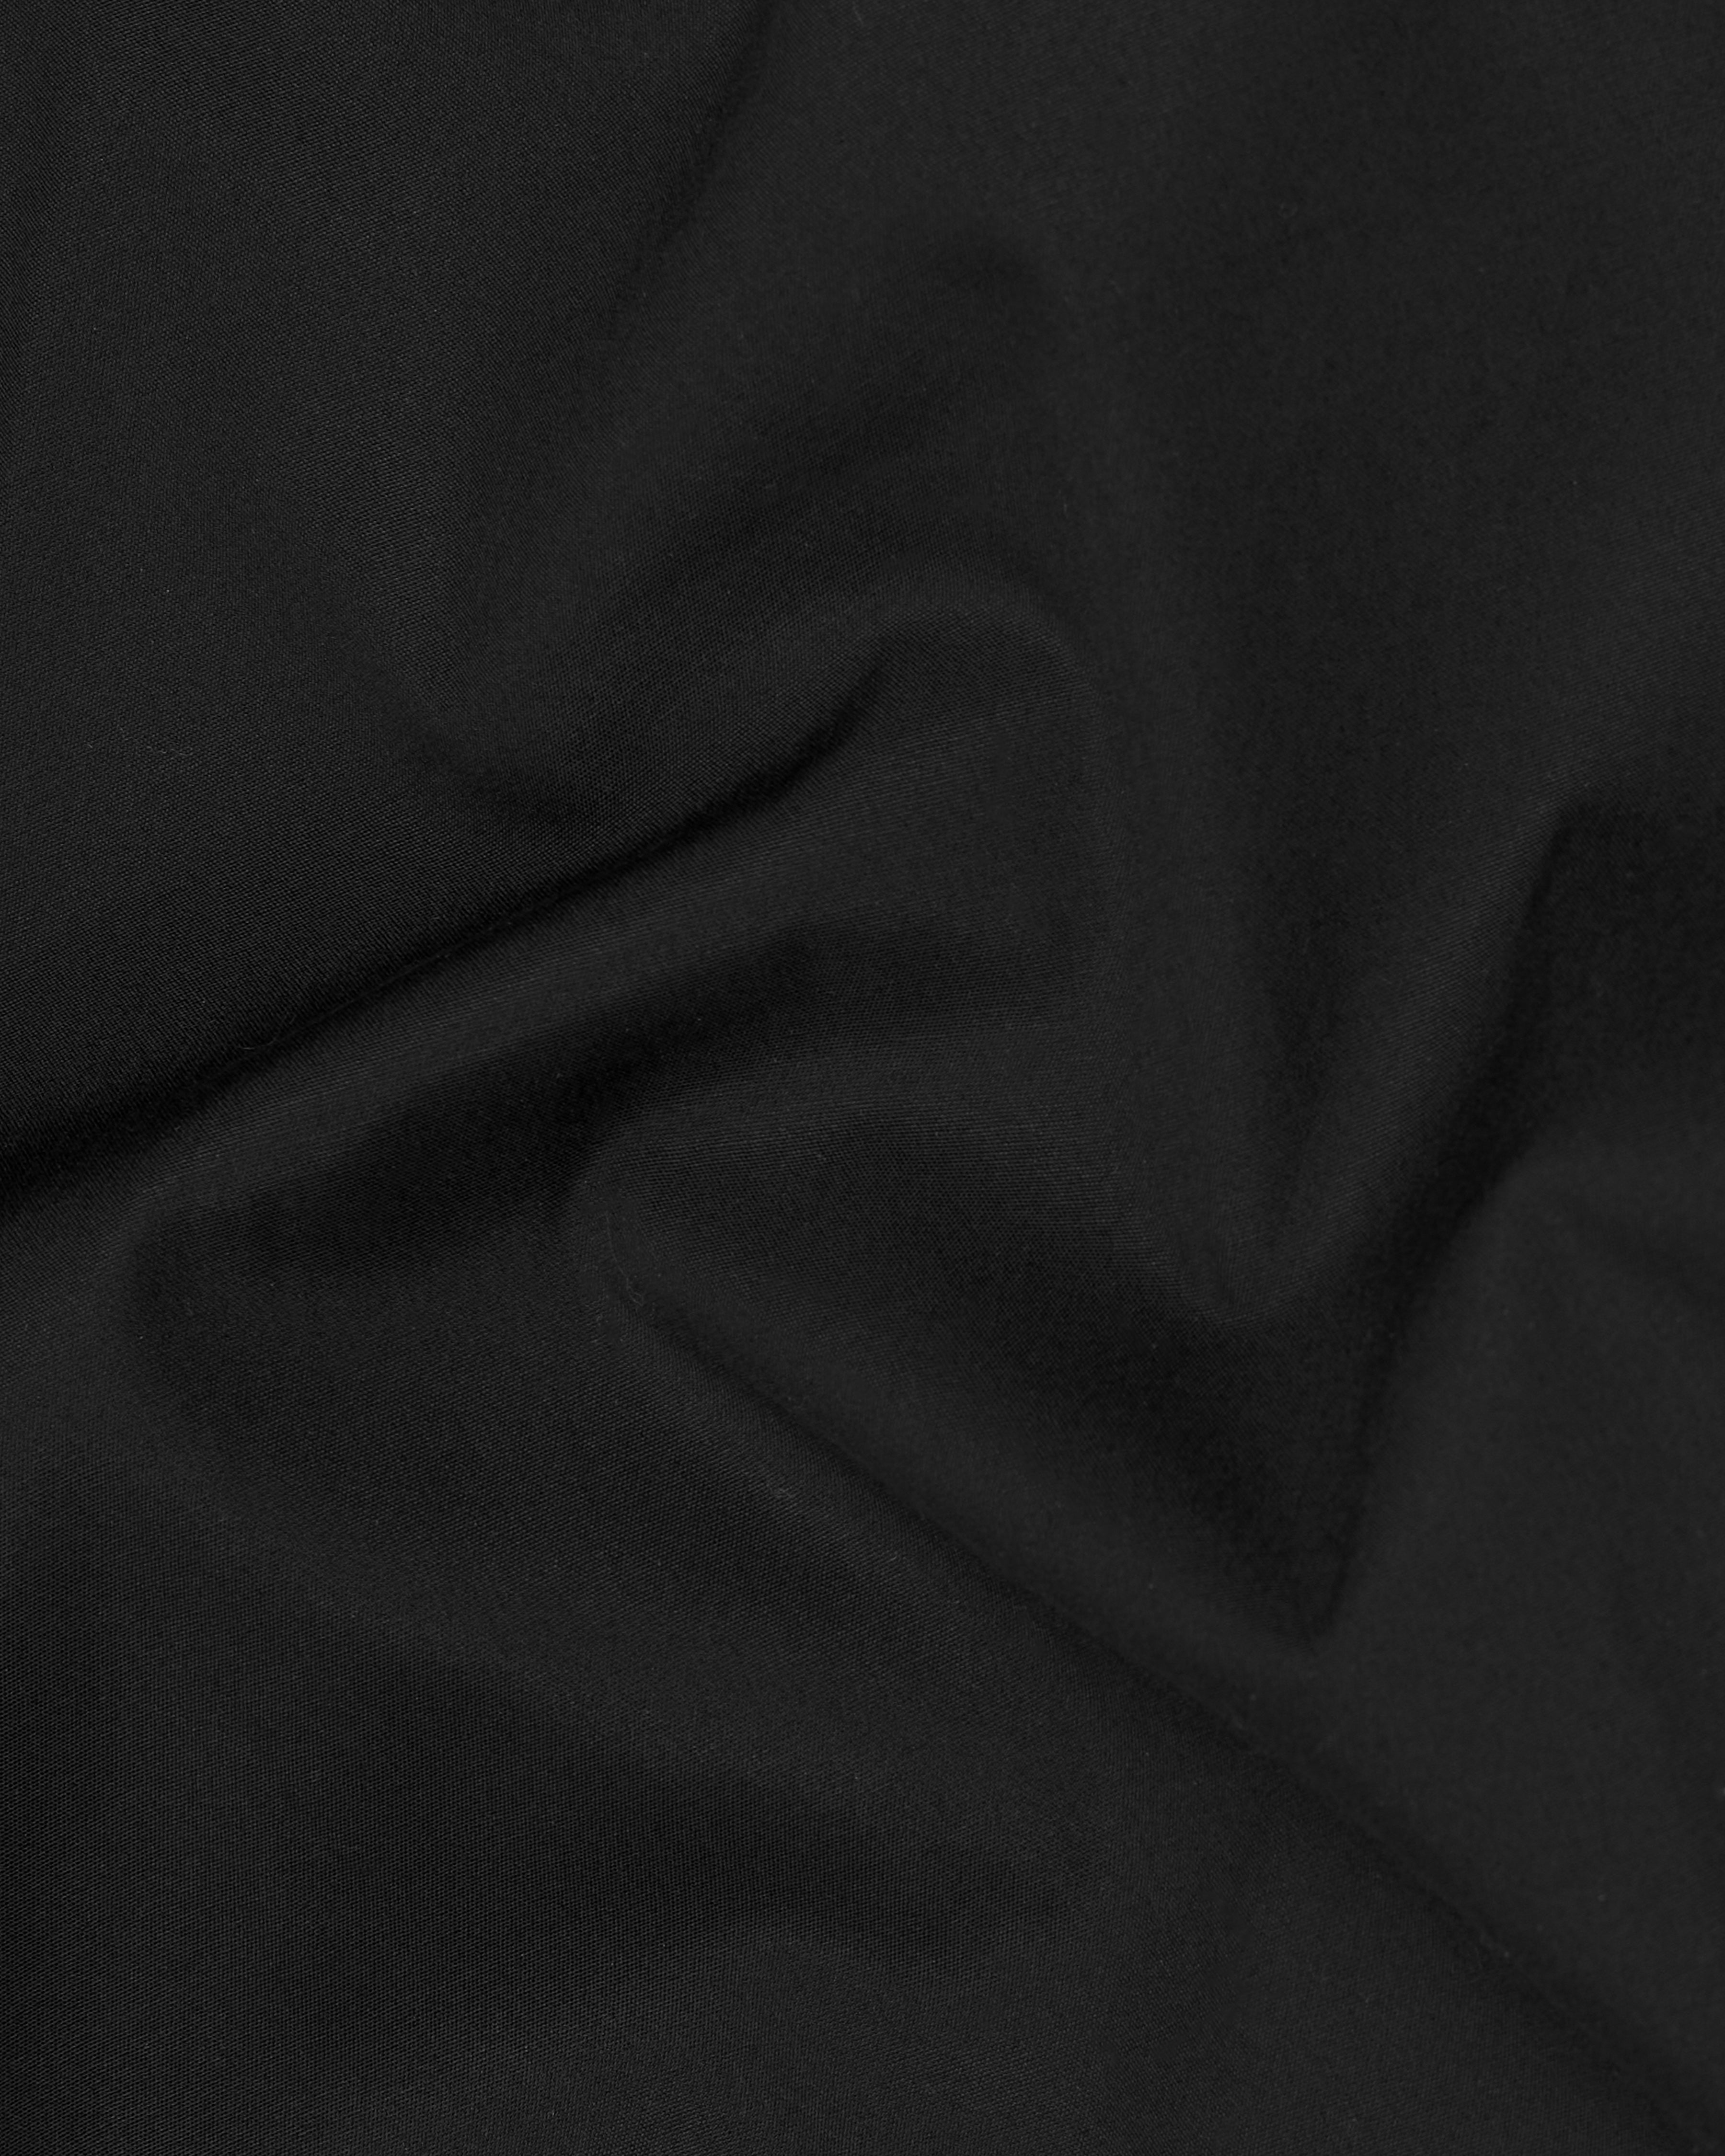 Jade Black Premium Cotton Lounge Pants LP202-28, LP202-30, LP202-32, LP202-34, LP202-36, LP202-38, LP202-40, LP202-42, LP202-44